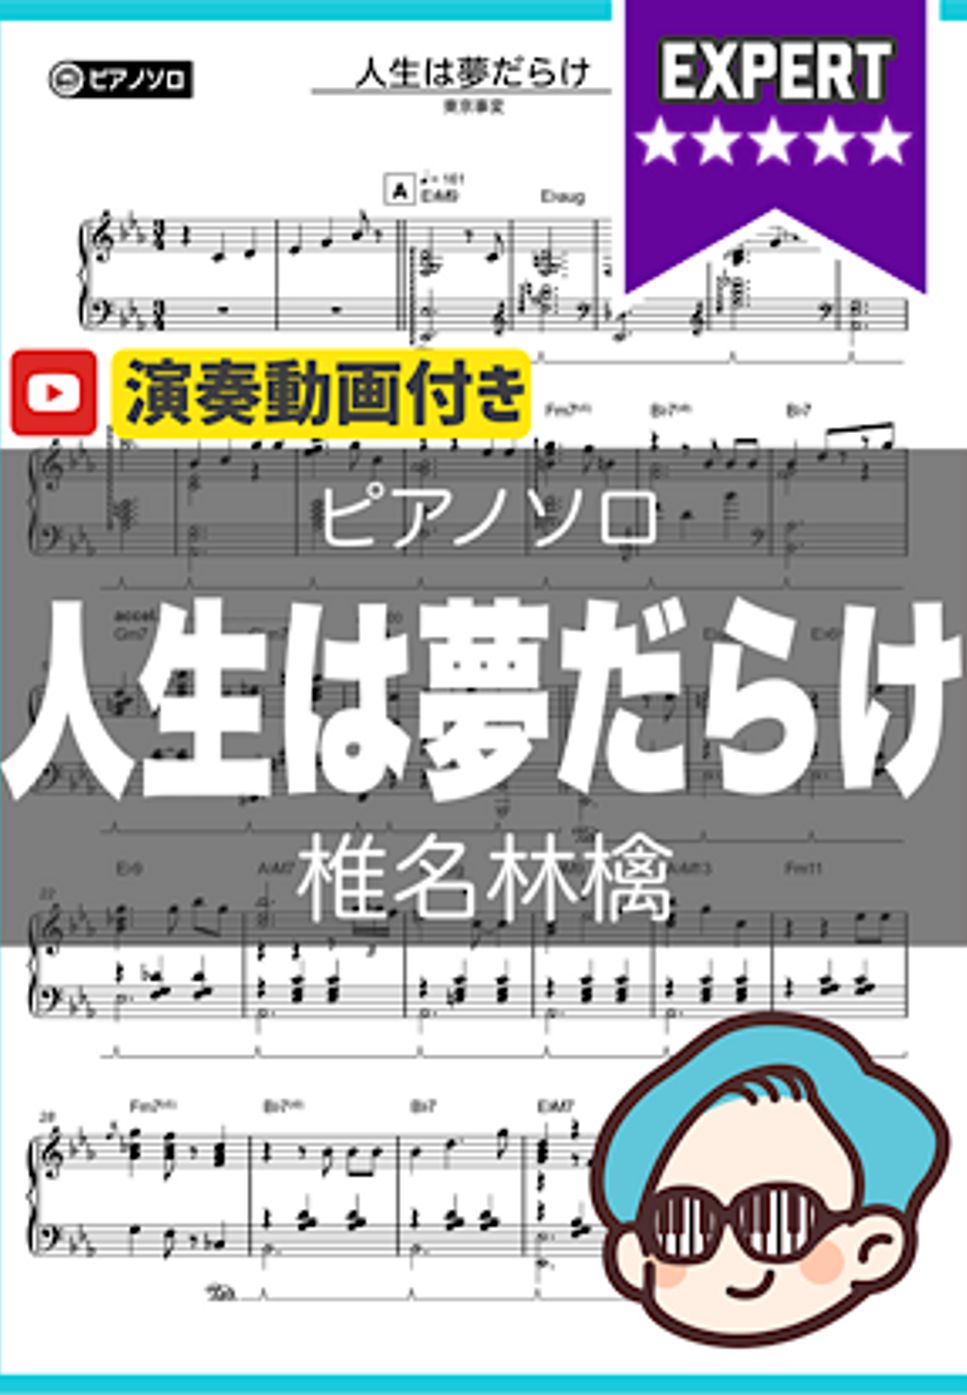 椎名林檎 - 人生は夢だらけ by シータピアノ